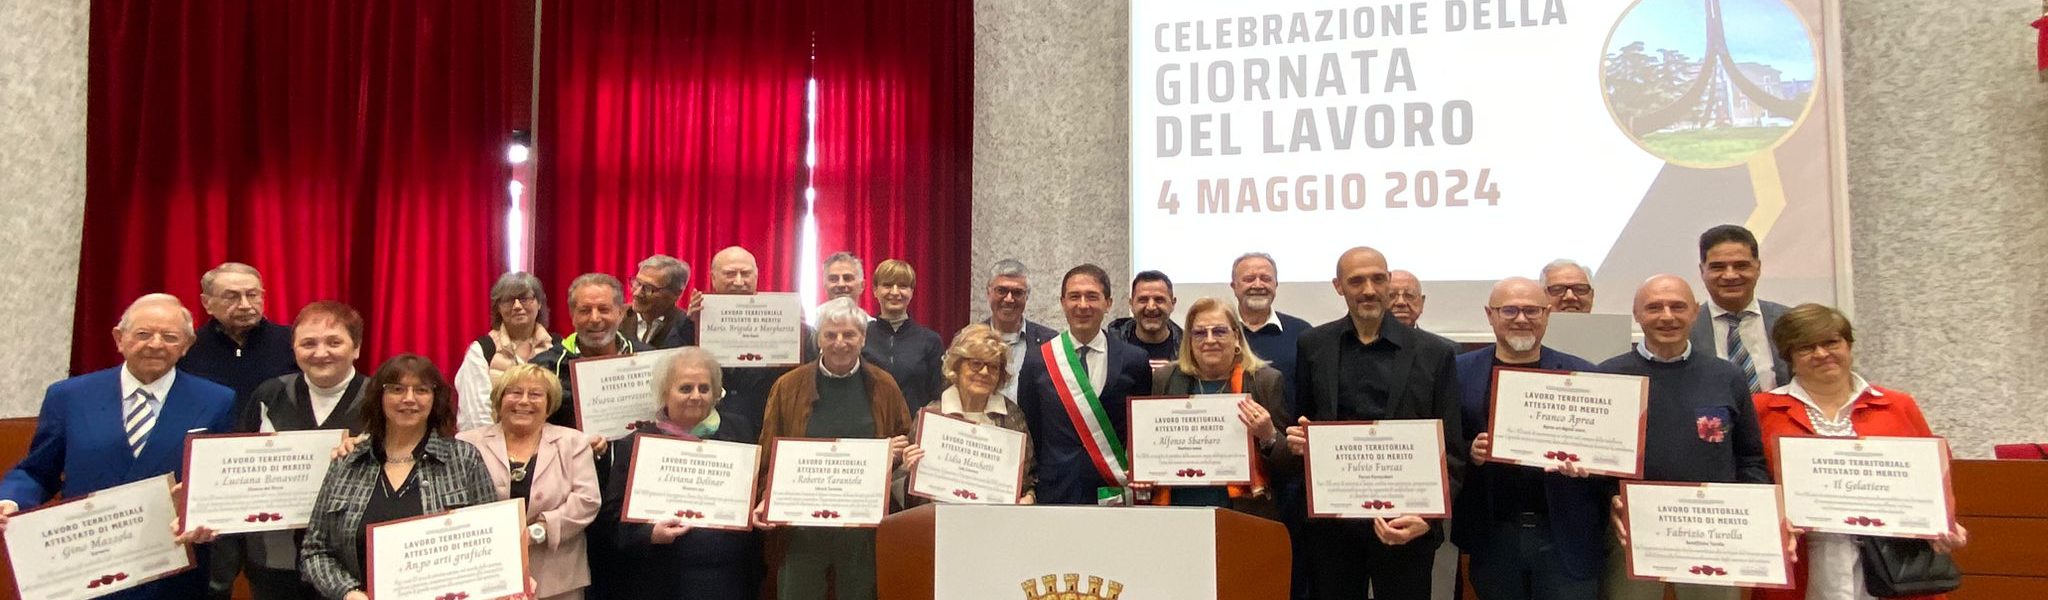 Nella foto si vede il sindaco di Sesto San Giovanni Roberto Di Stefano con i lavoratori premiati